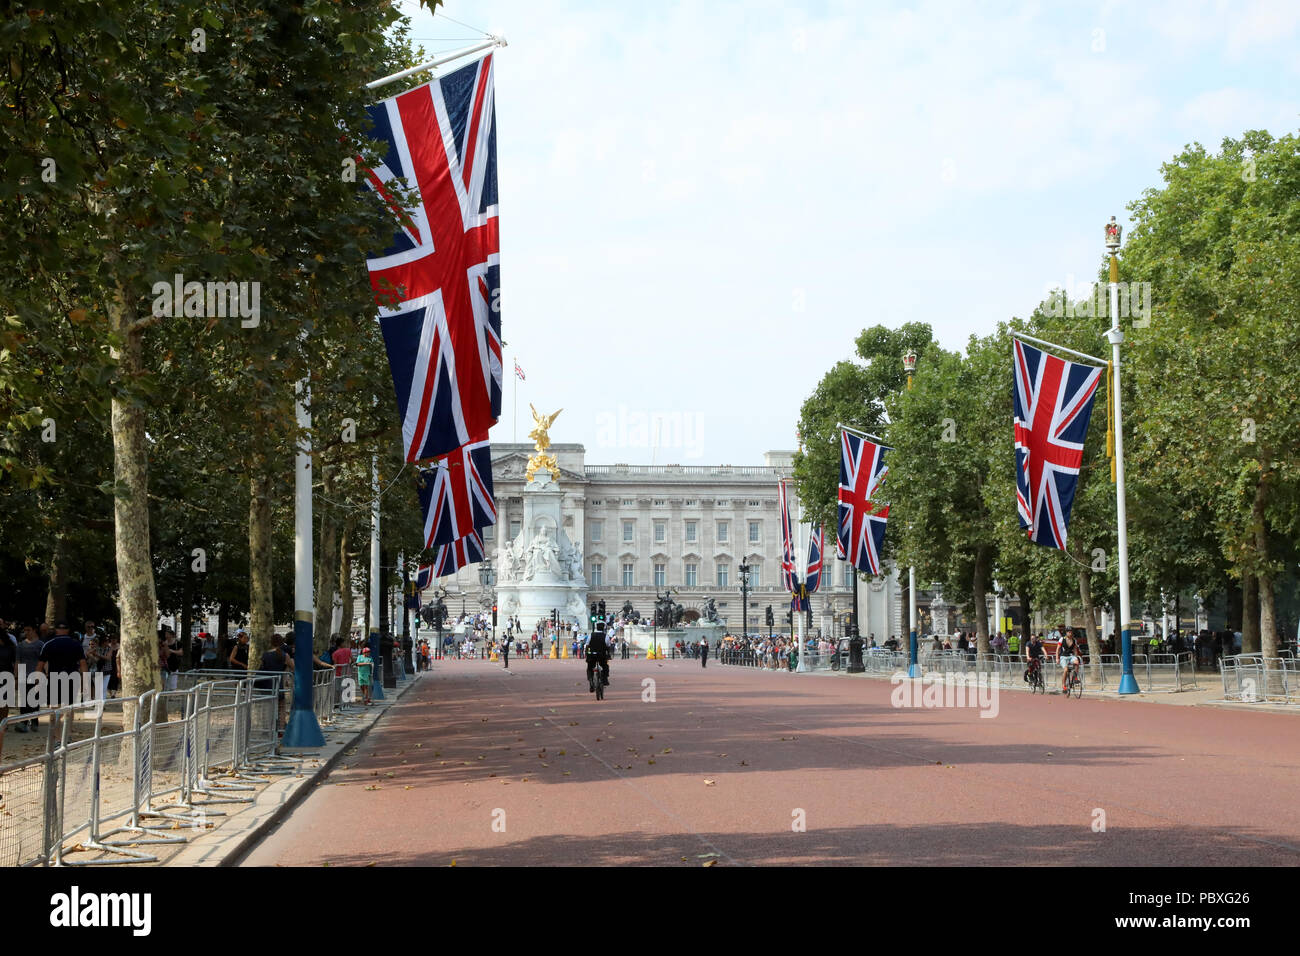 London/Großbritannien - 26. Juli 2018: Blick auf den Buckingham Palace, der Heimat der britische Monarch, aus entlang der Mall Stockfoto